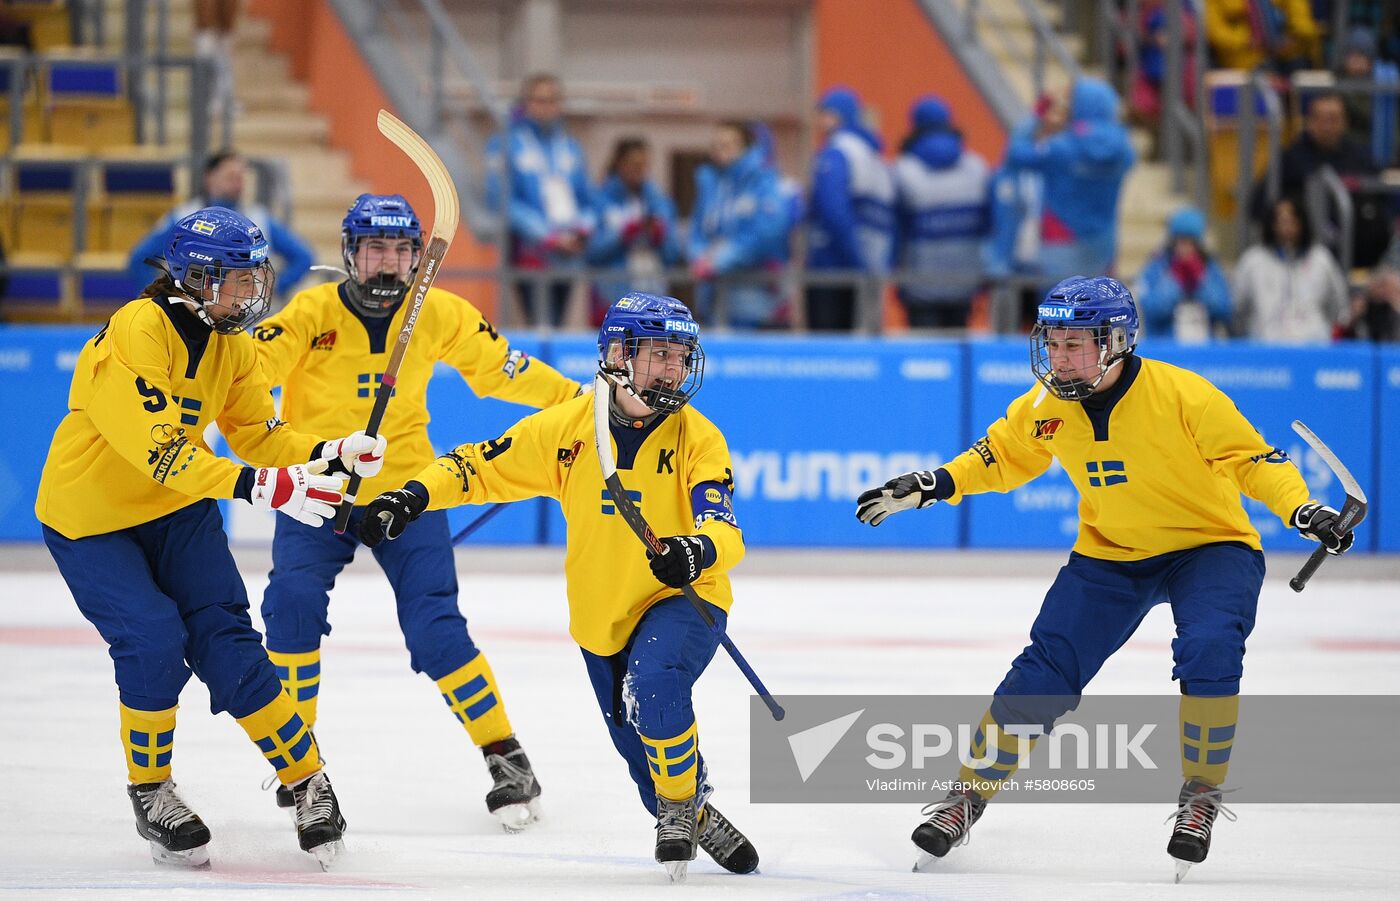 Russia Universiade Bandy Women Sweden - Russia